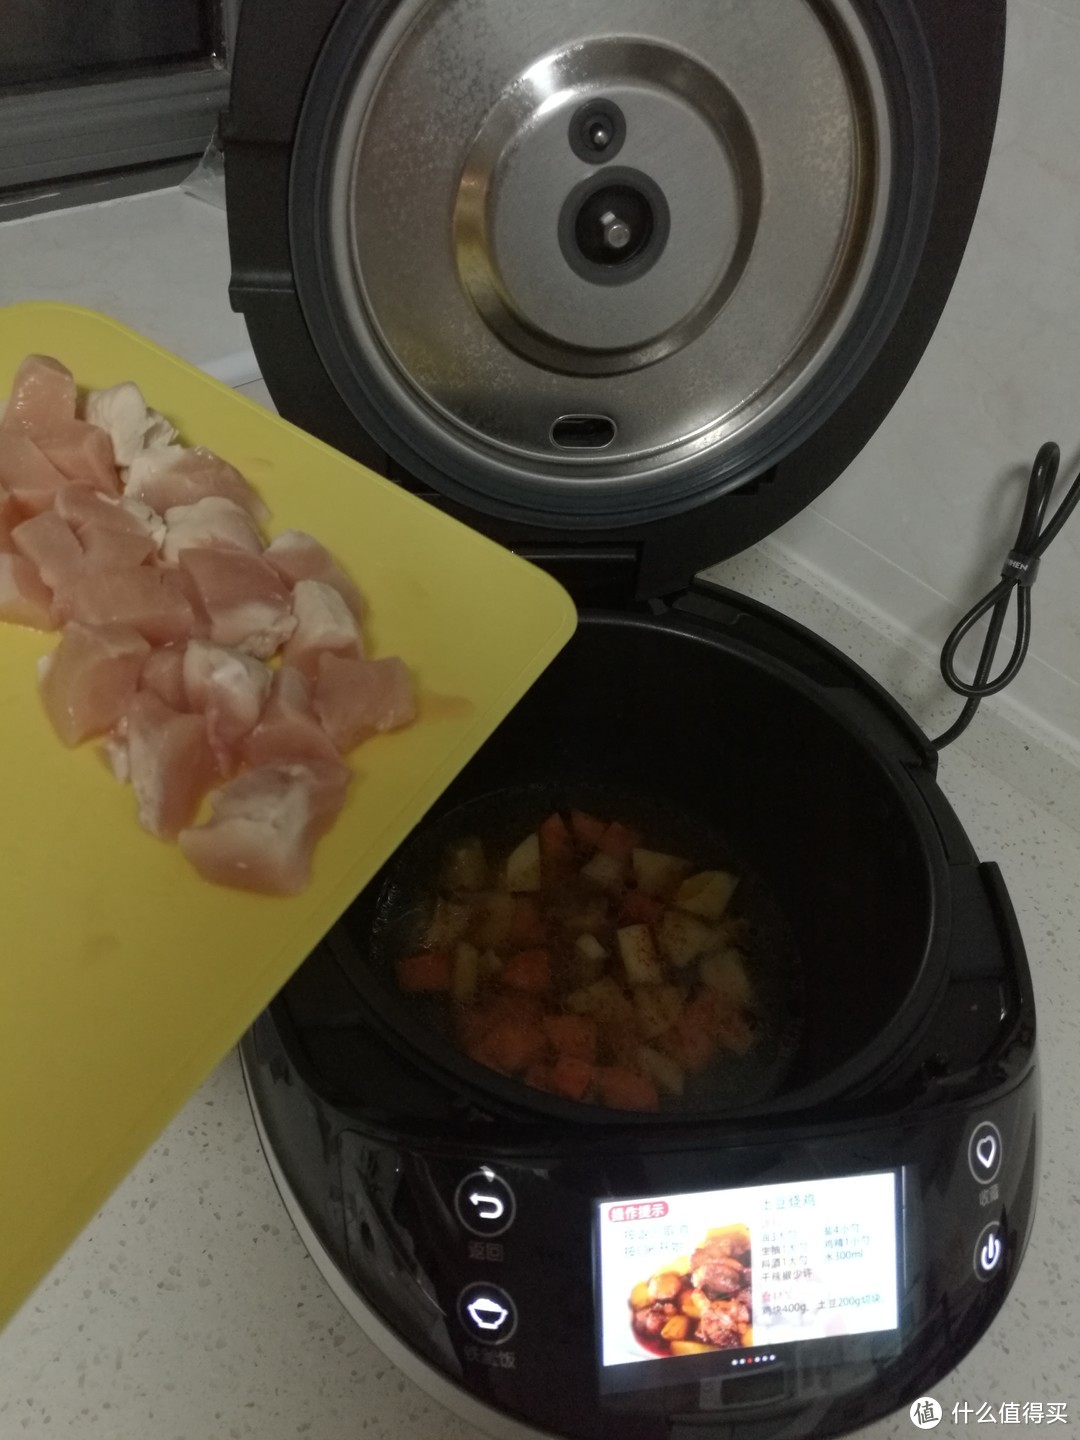 #原创新人#大吉大利，晚上吃鸡—从没做过菜的新手测试九阳炒菜机